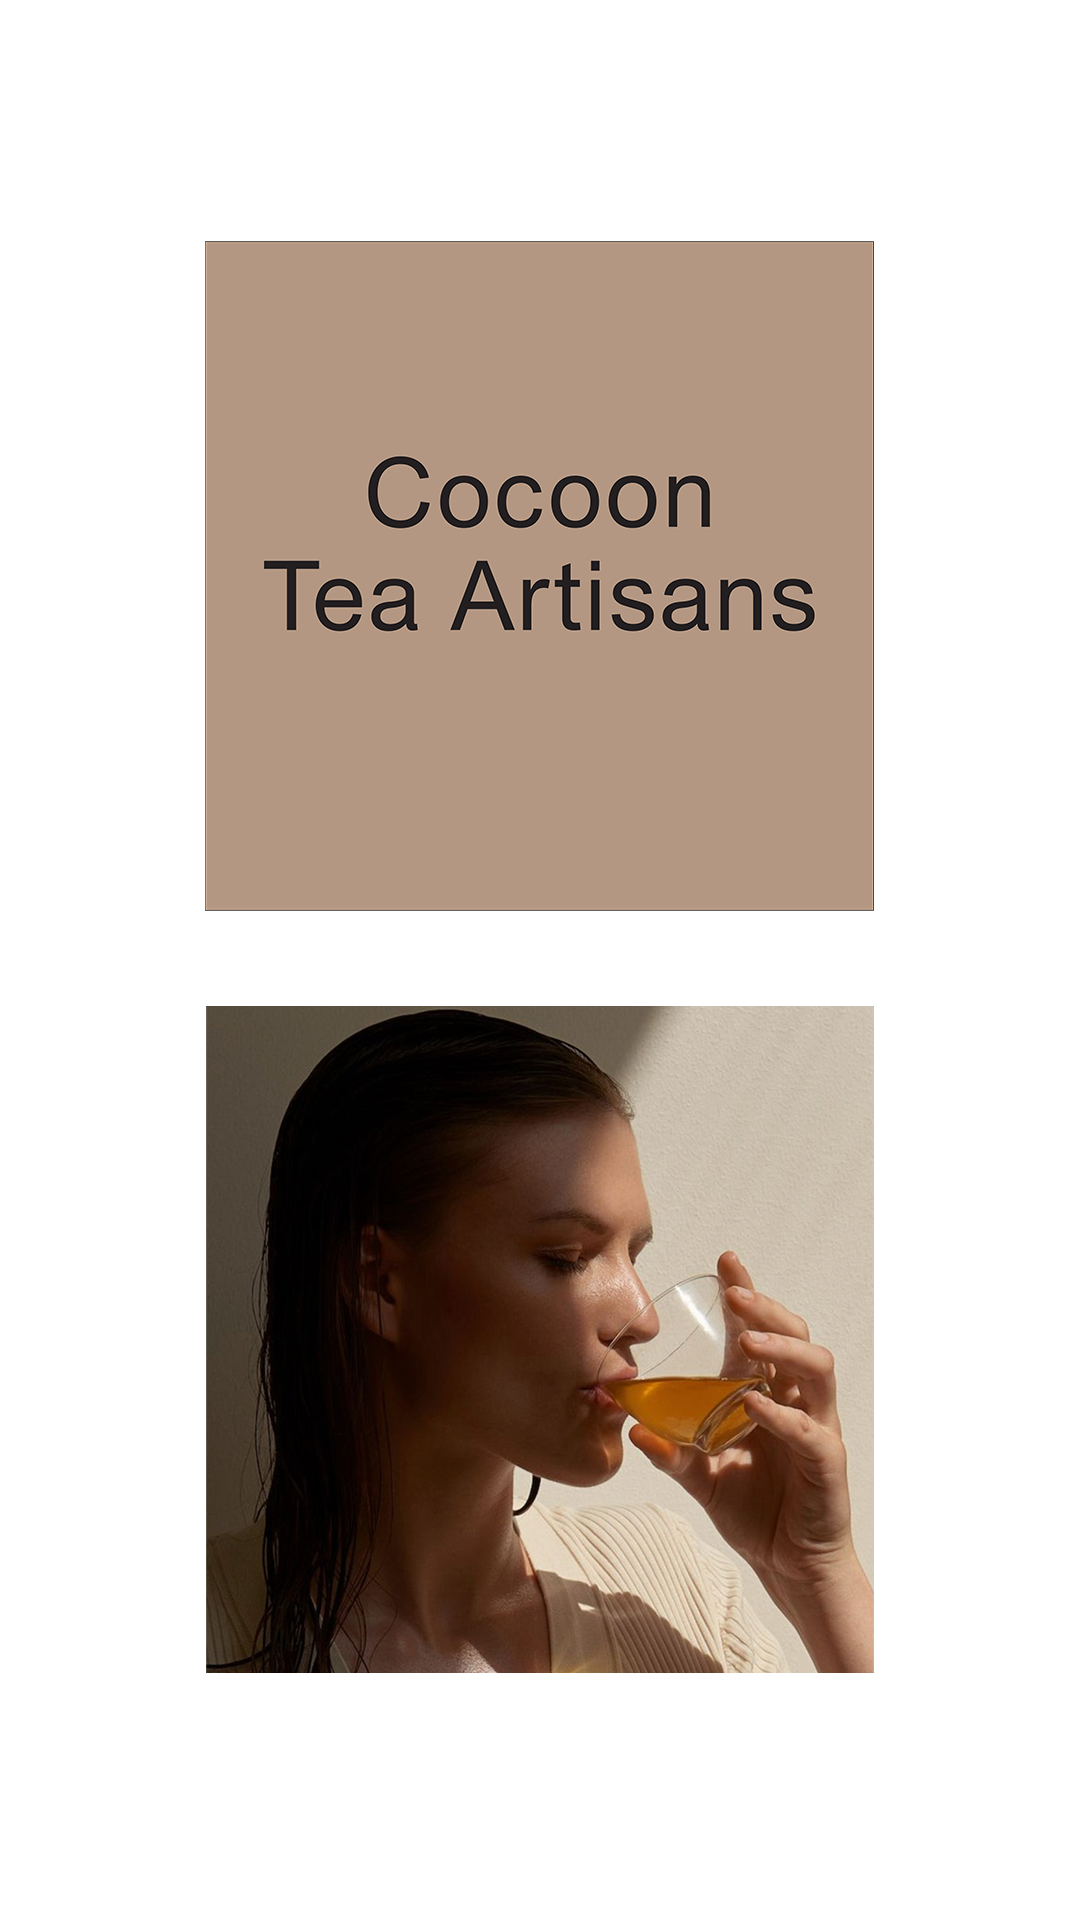 Cocoon Tea Artisans